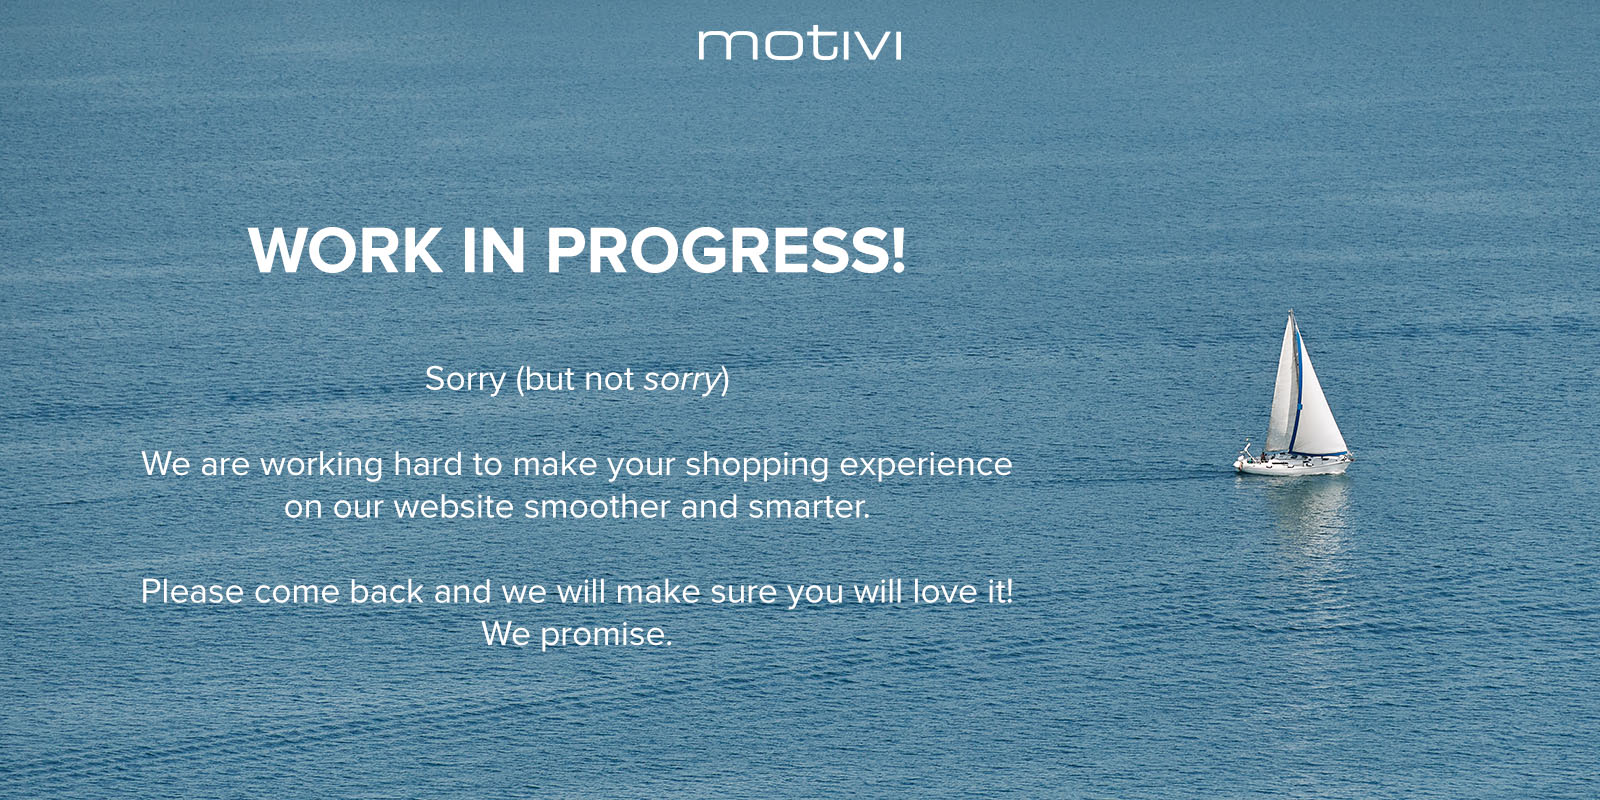 Die Website von Motivi ist derzeit aufgrund von Wartungsarbeiten nicht verfügbar.